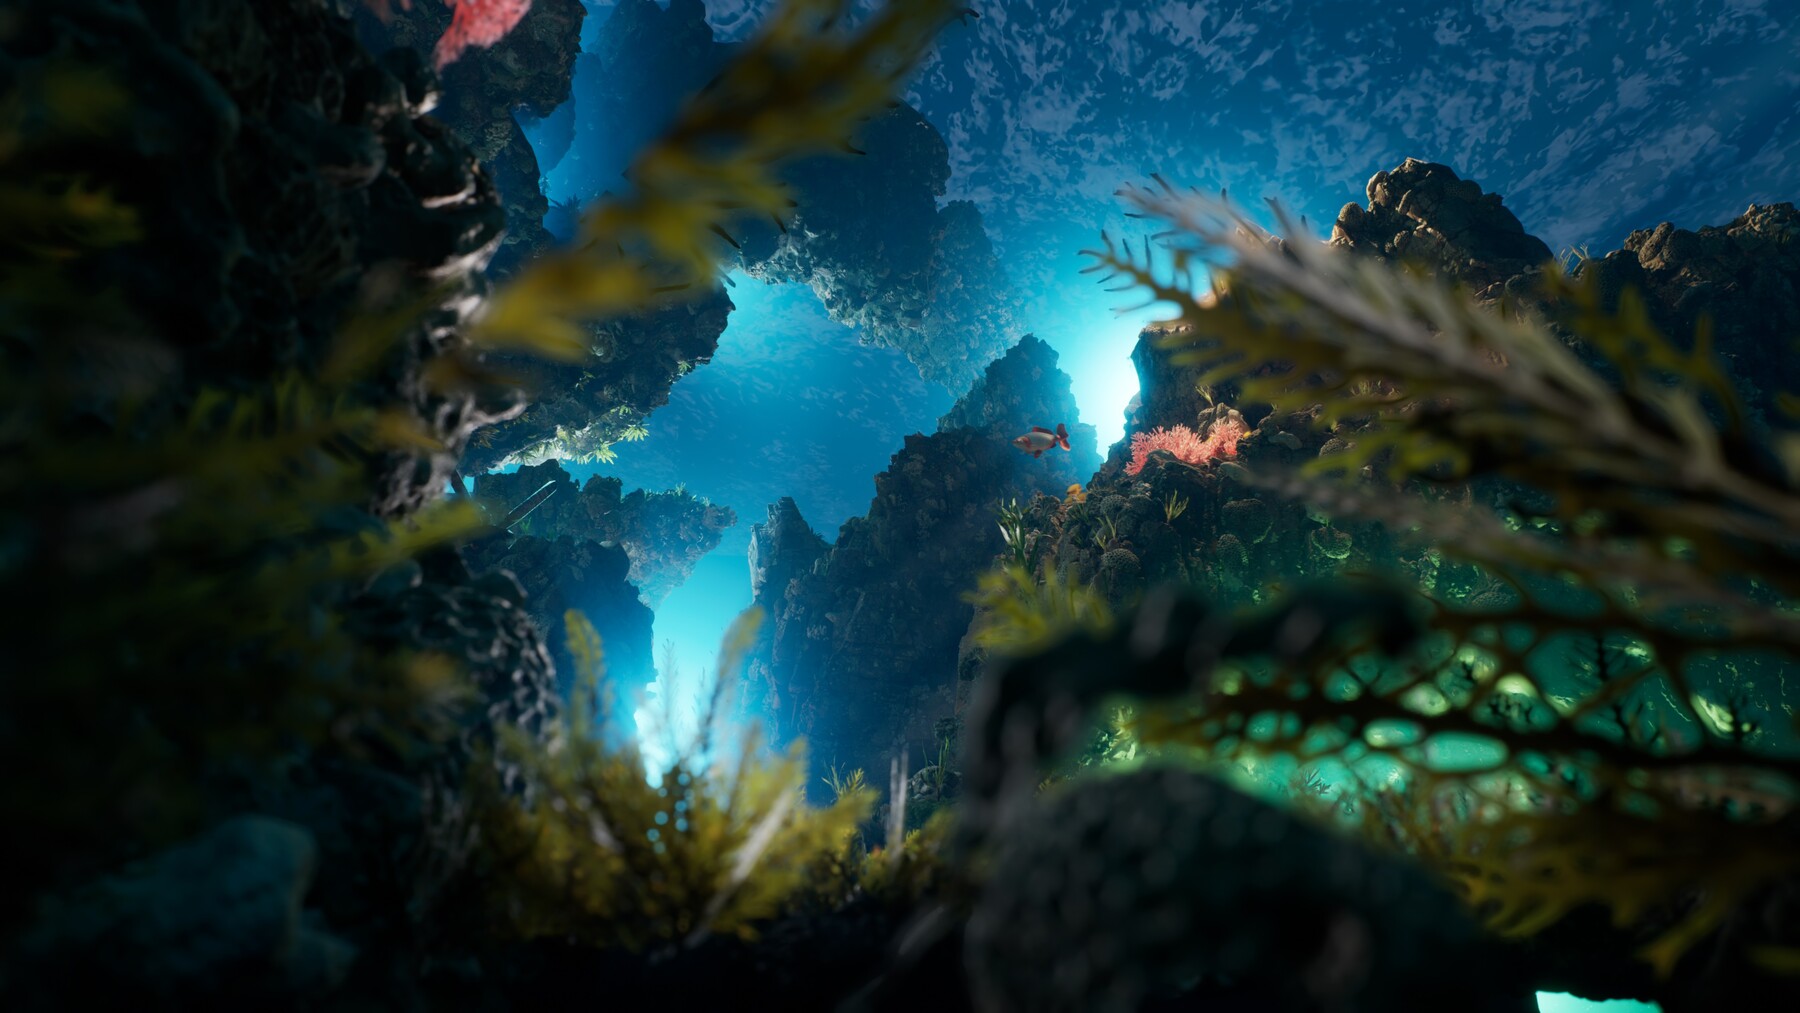 Coral Island: por dentro do relaxante simulador de fazendas que reinventou  o gênero - Unreal Engine